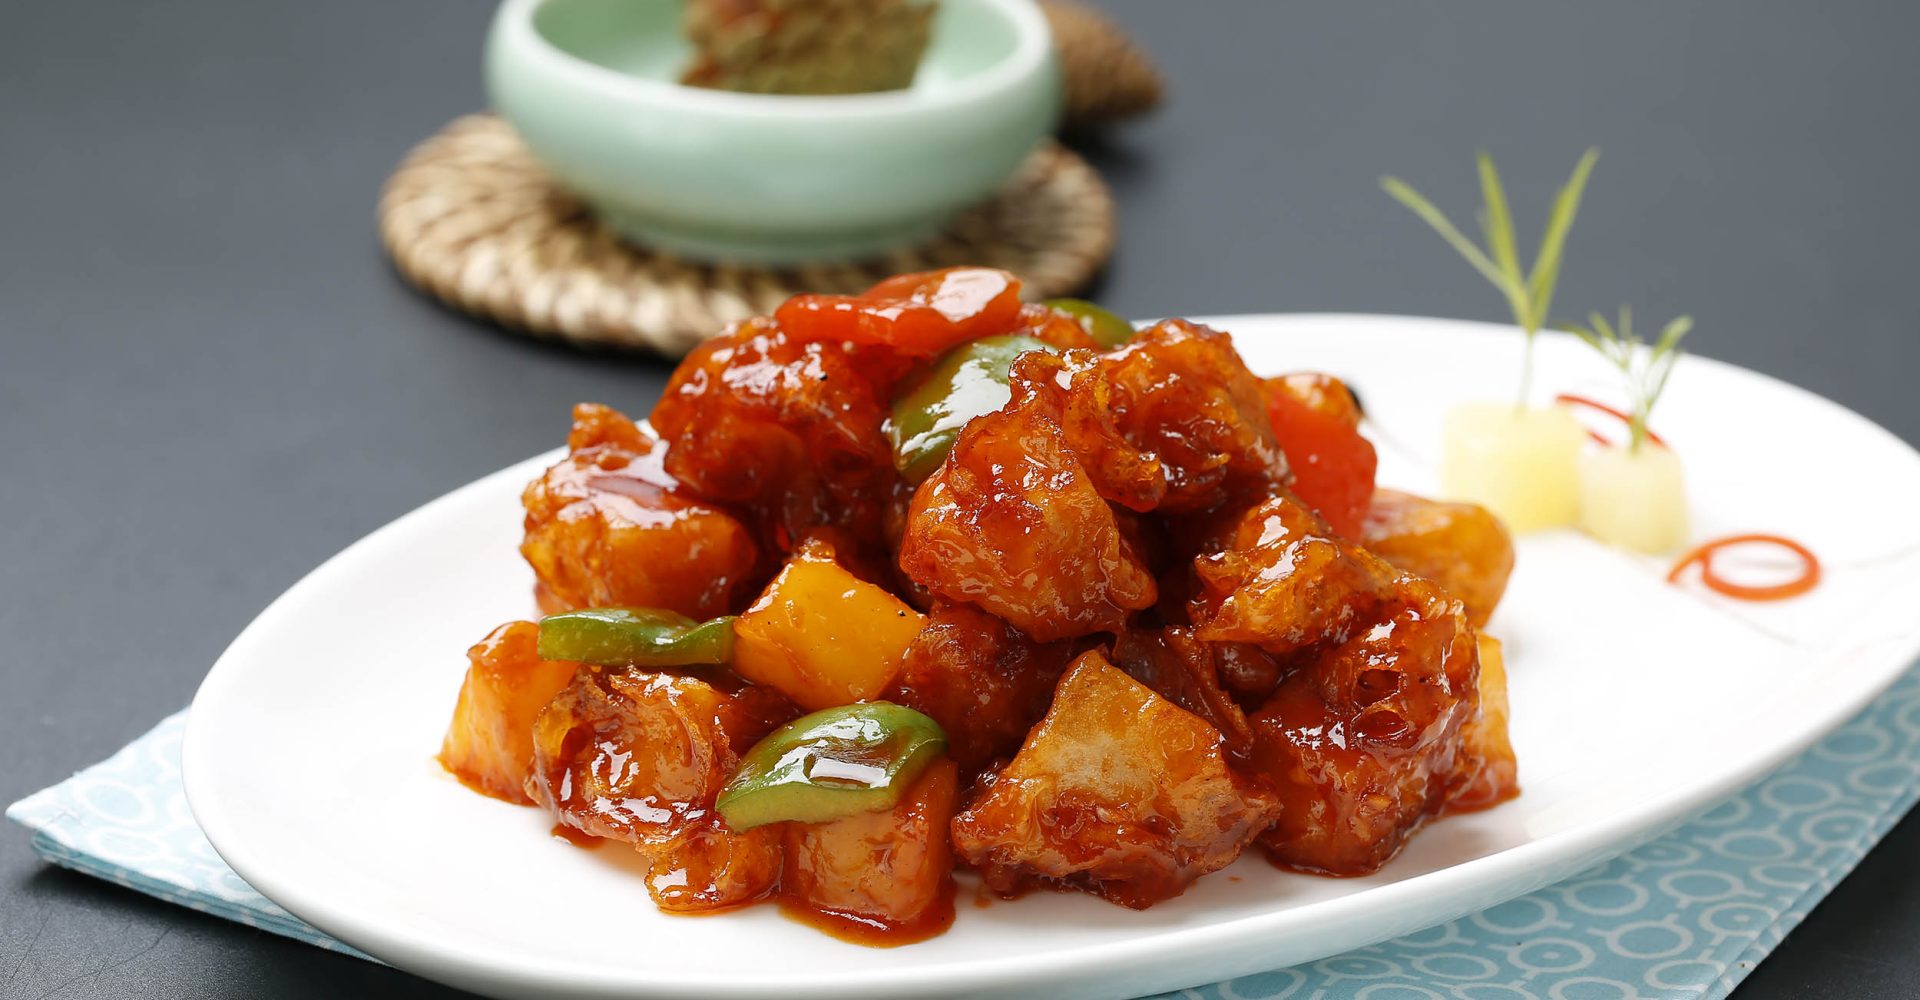 Xiu Pork - Sweet and sour pork